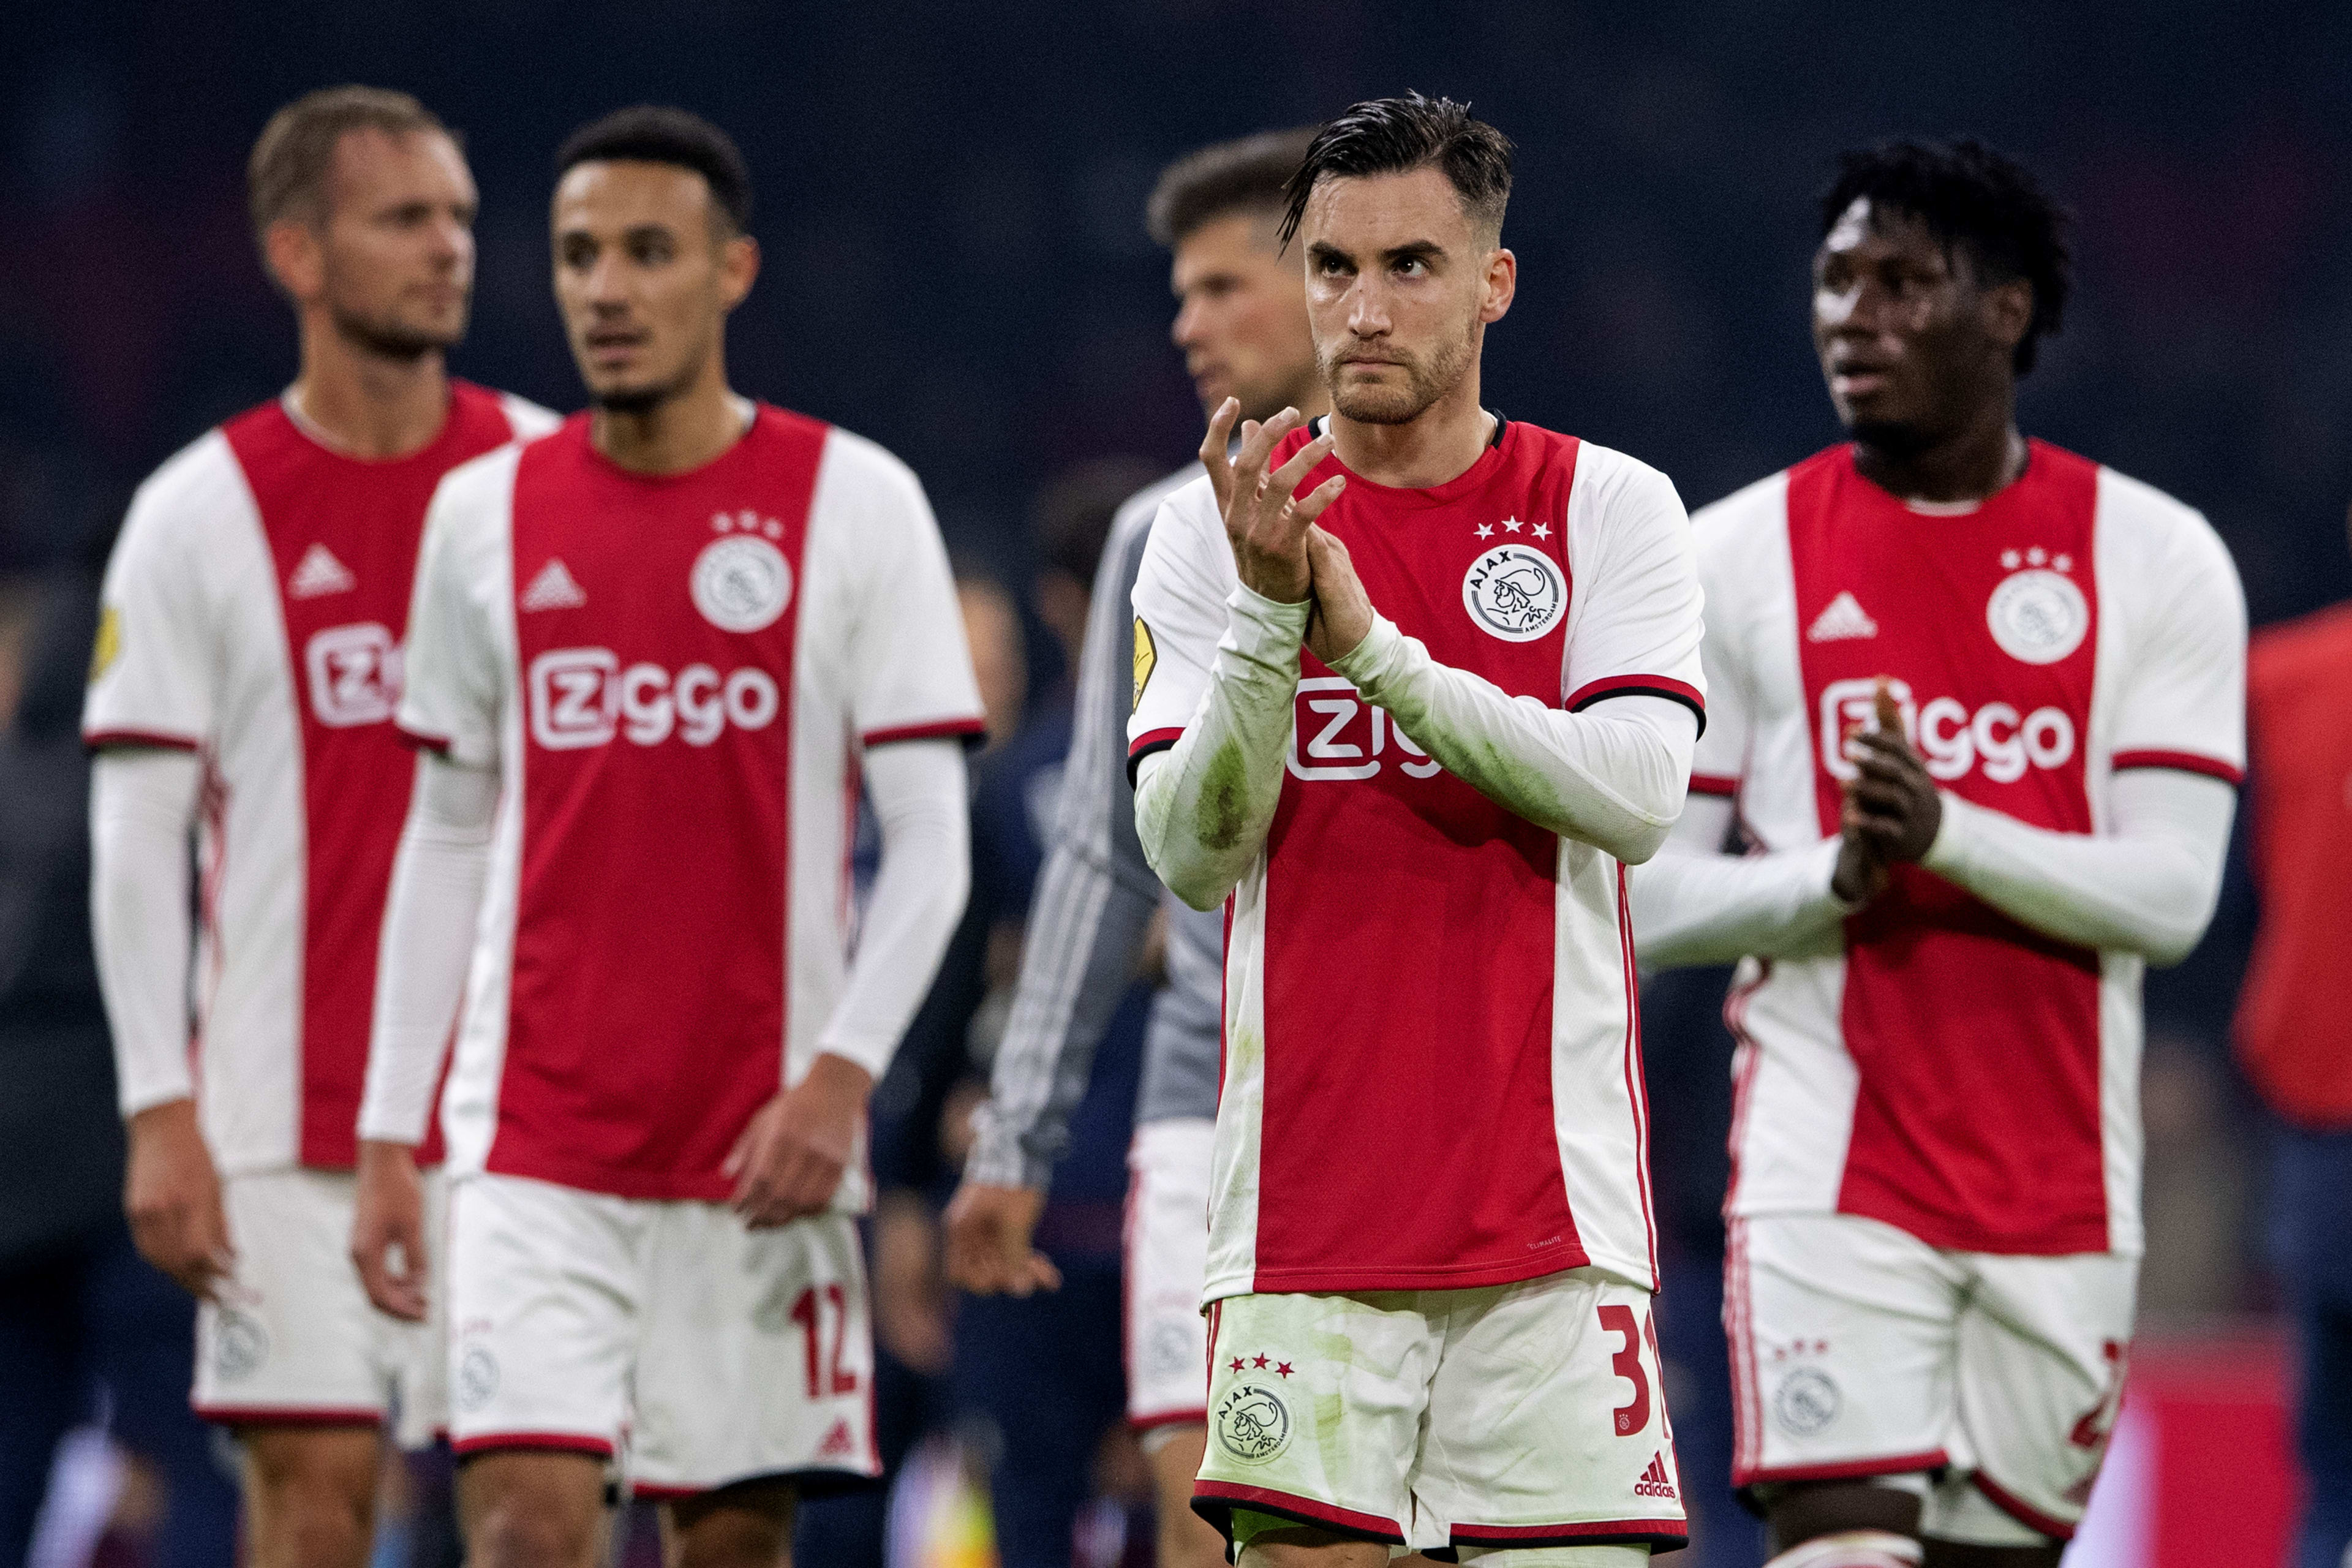 Maak kans op twee kaarten voor Ajax - Valencia (Spelvoorwaarden)